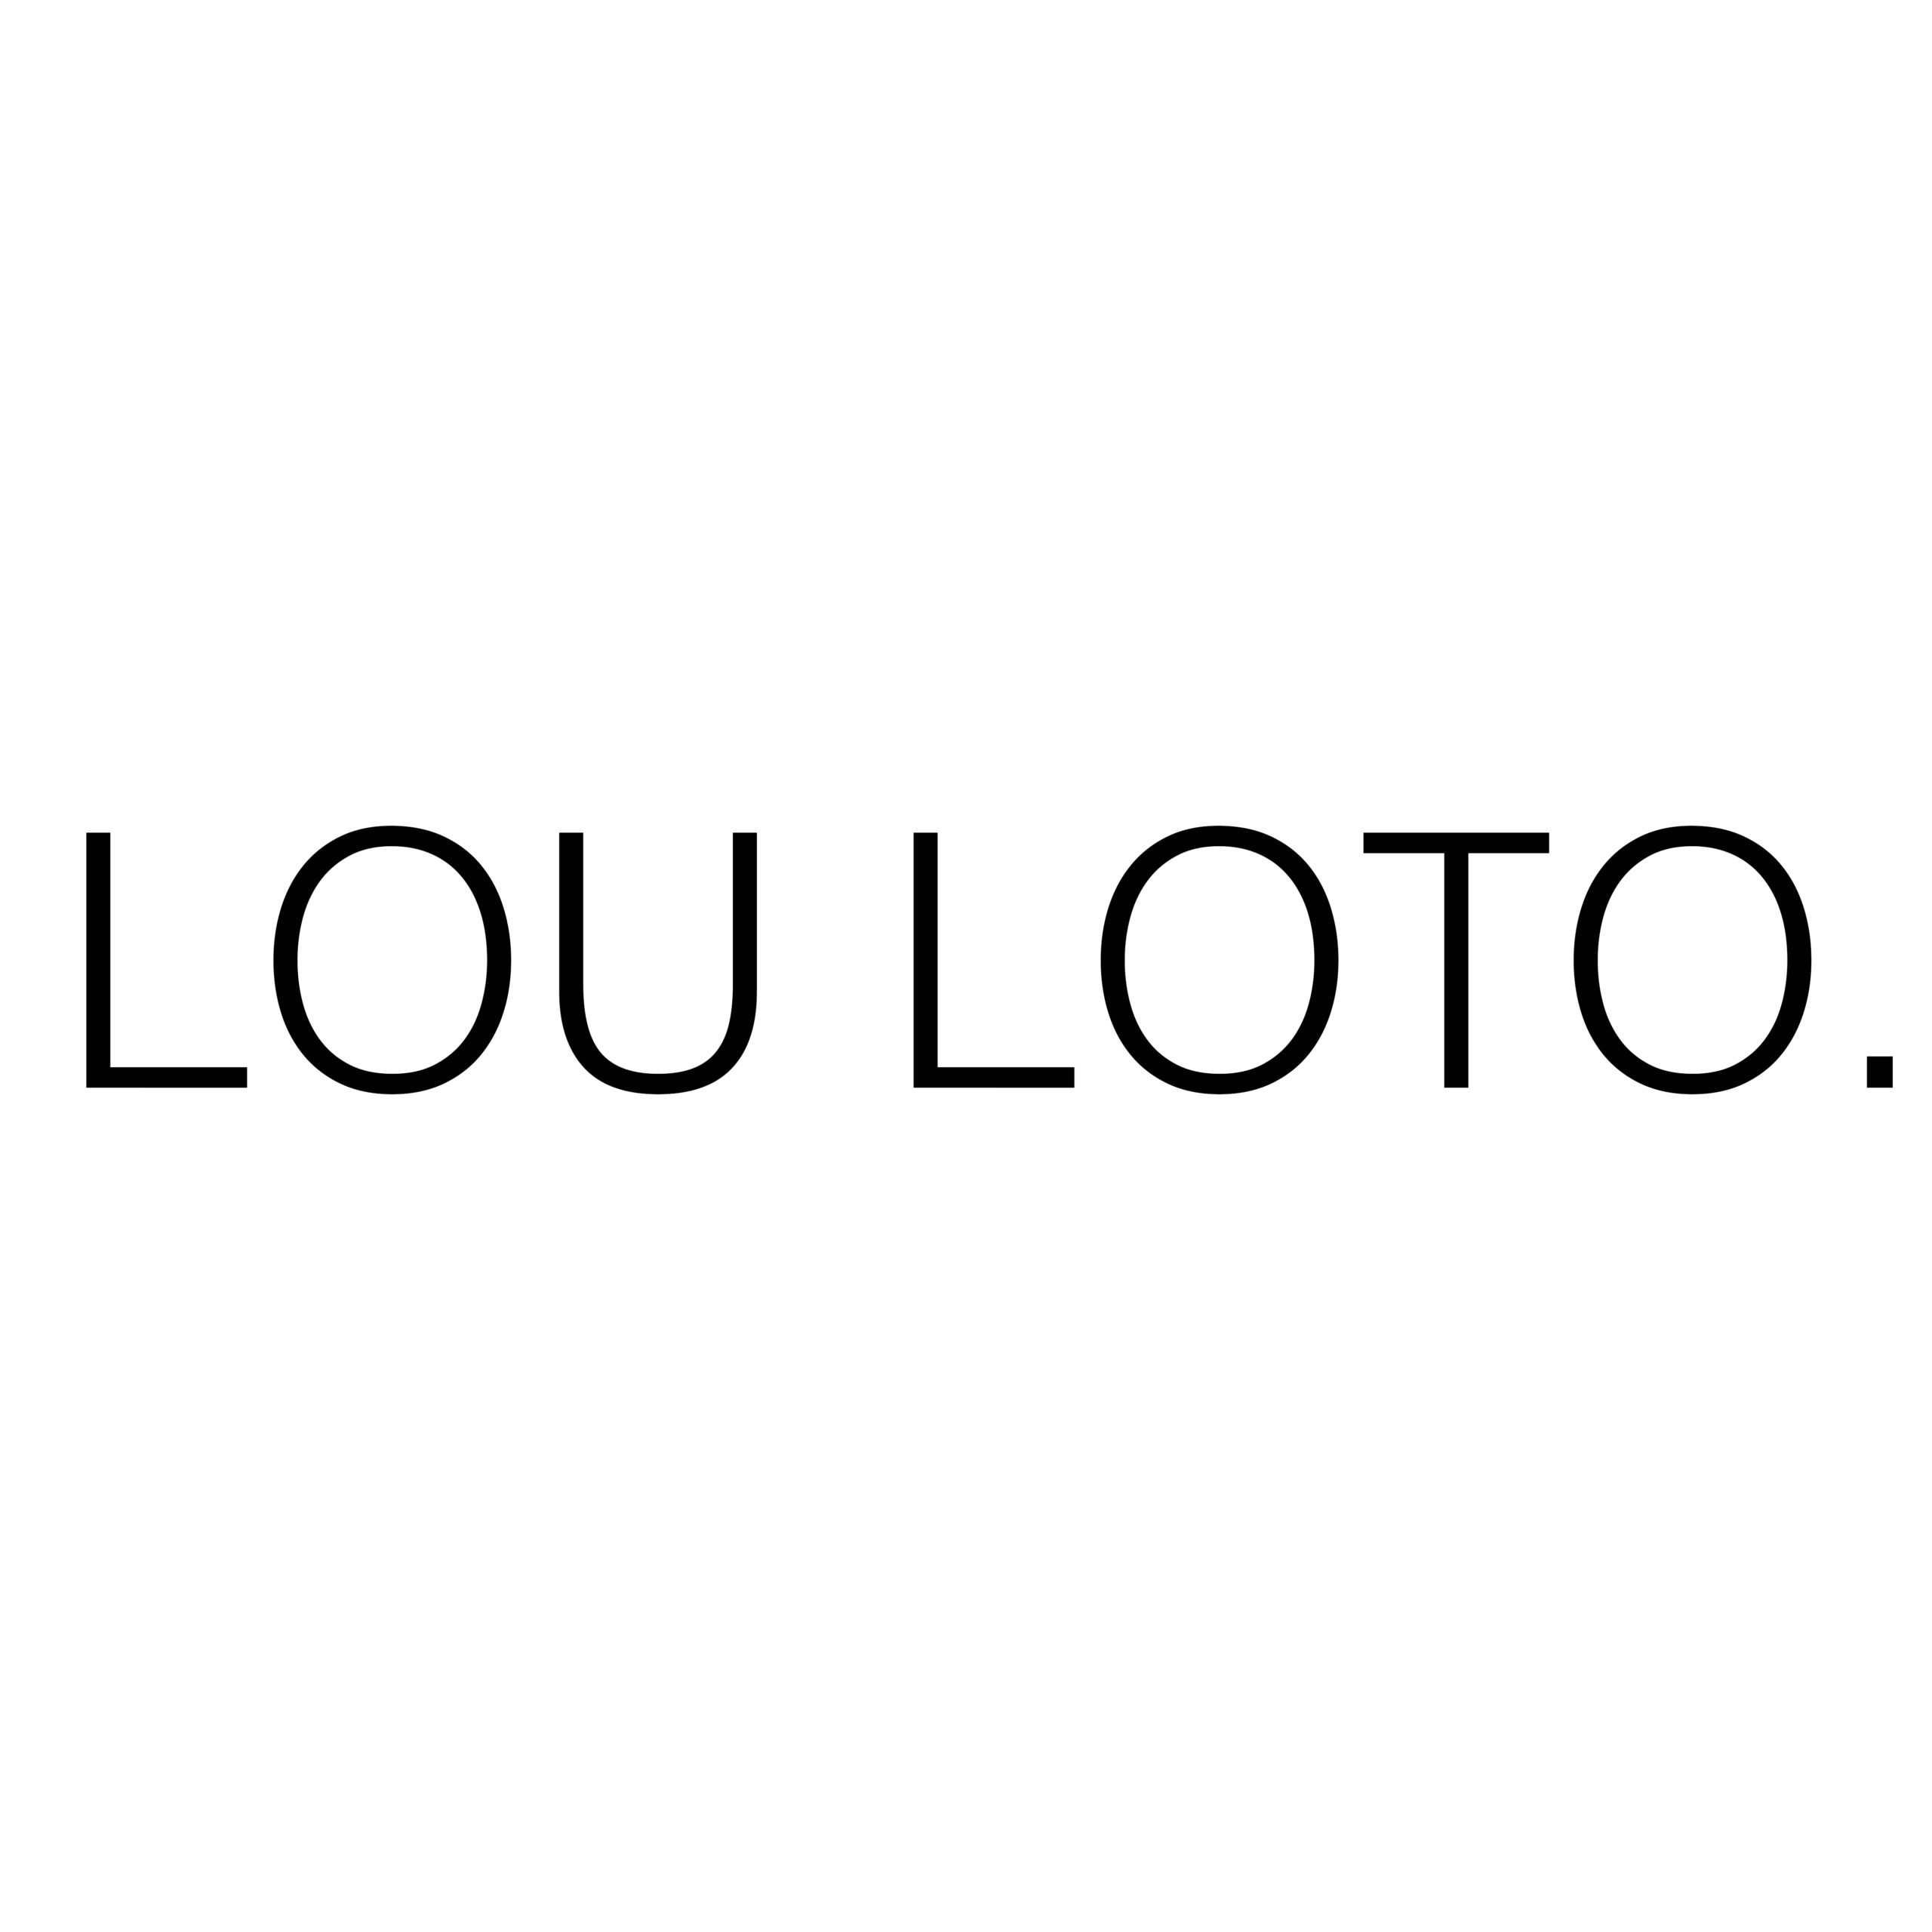 lou-loto-logo-big